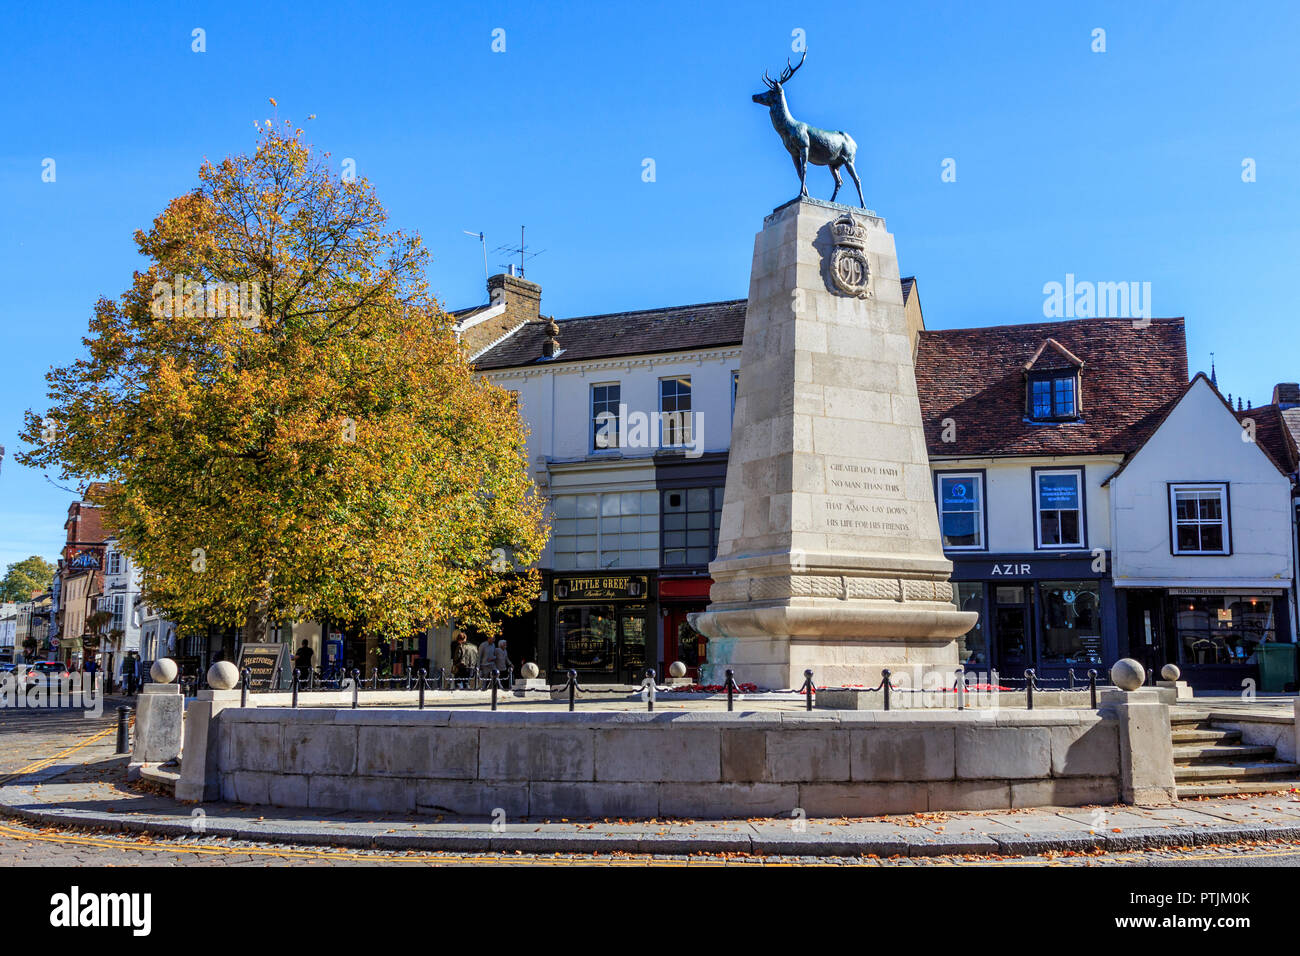 War Memorial avec symbole stag comté en altitude, le centre-ville de Hertford, magasins et attractions, la ville du comté de Hertfordshire, Angleterre Banque D'Images